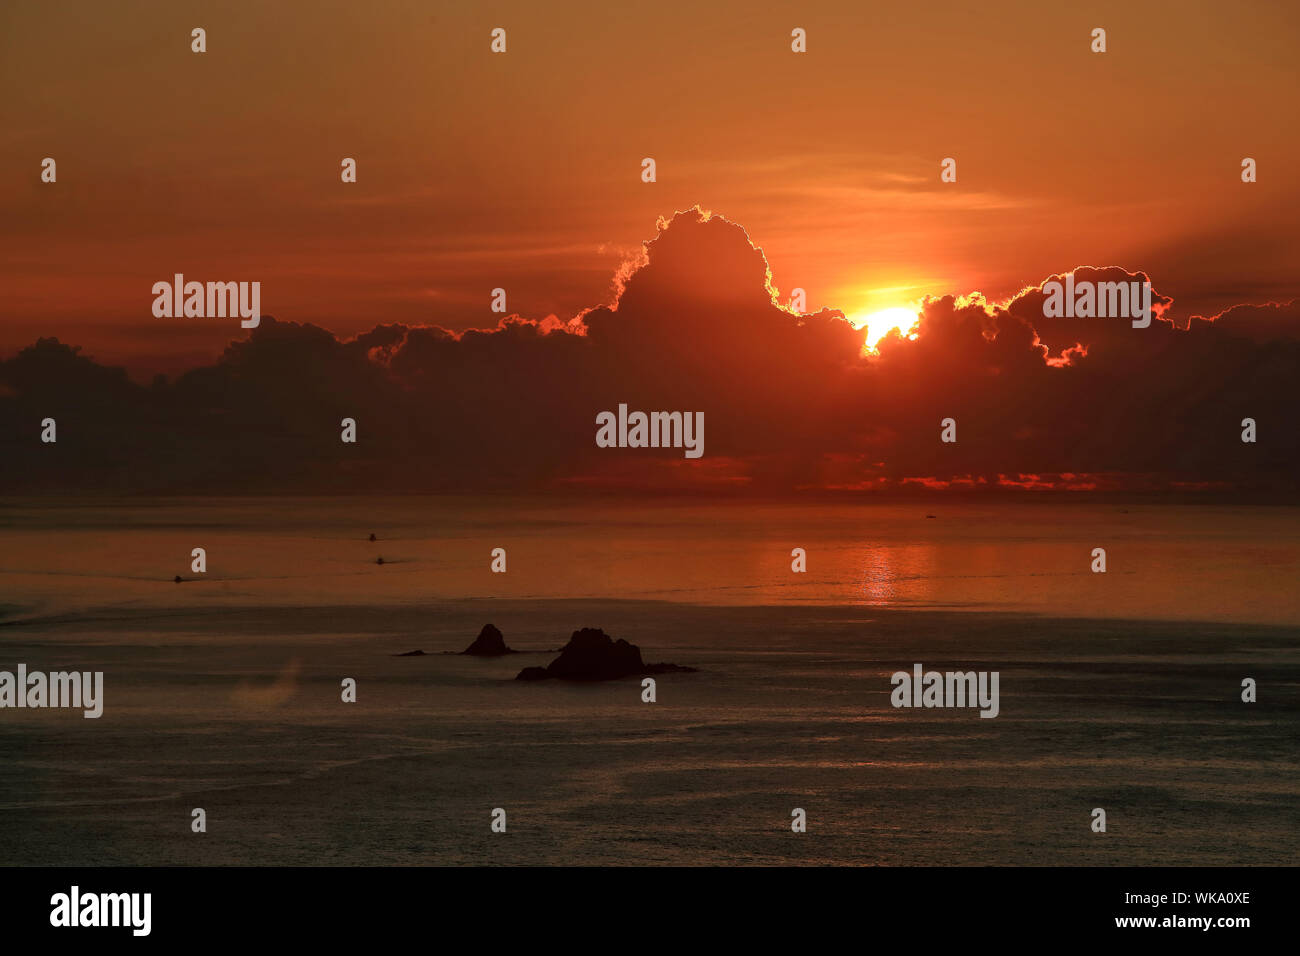 Vue panoramique sur mer contre ciel dramatique pendant le coucher du soleil Banque D'Images